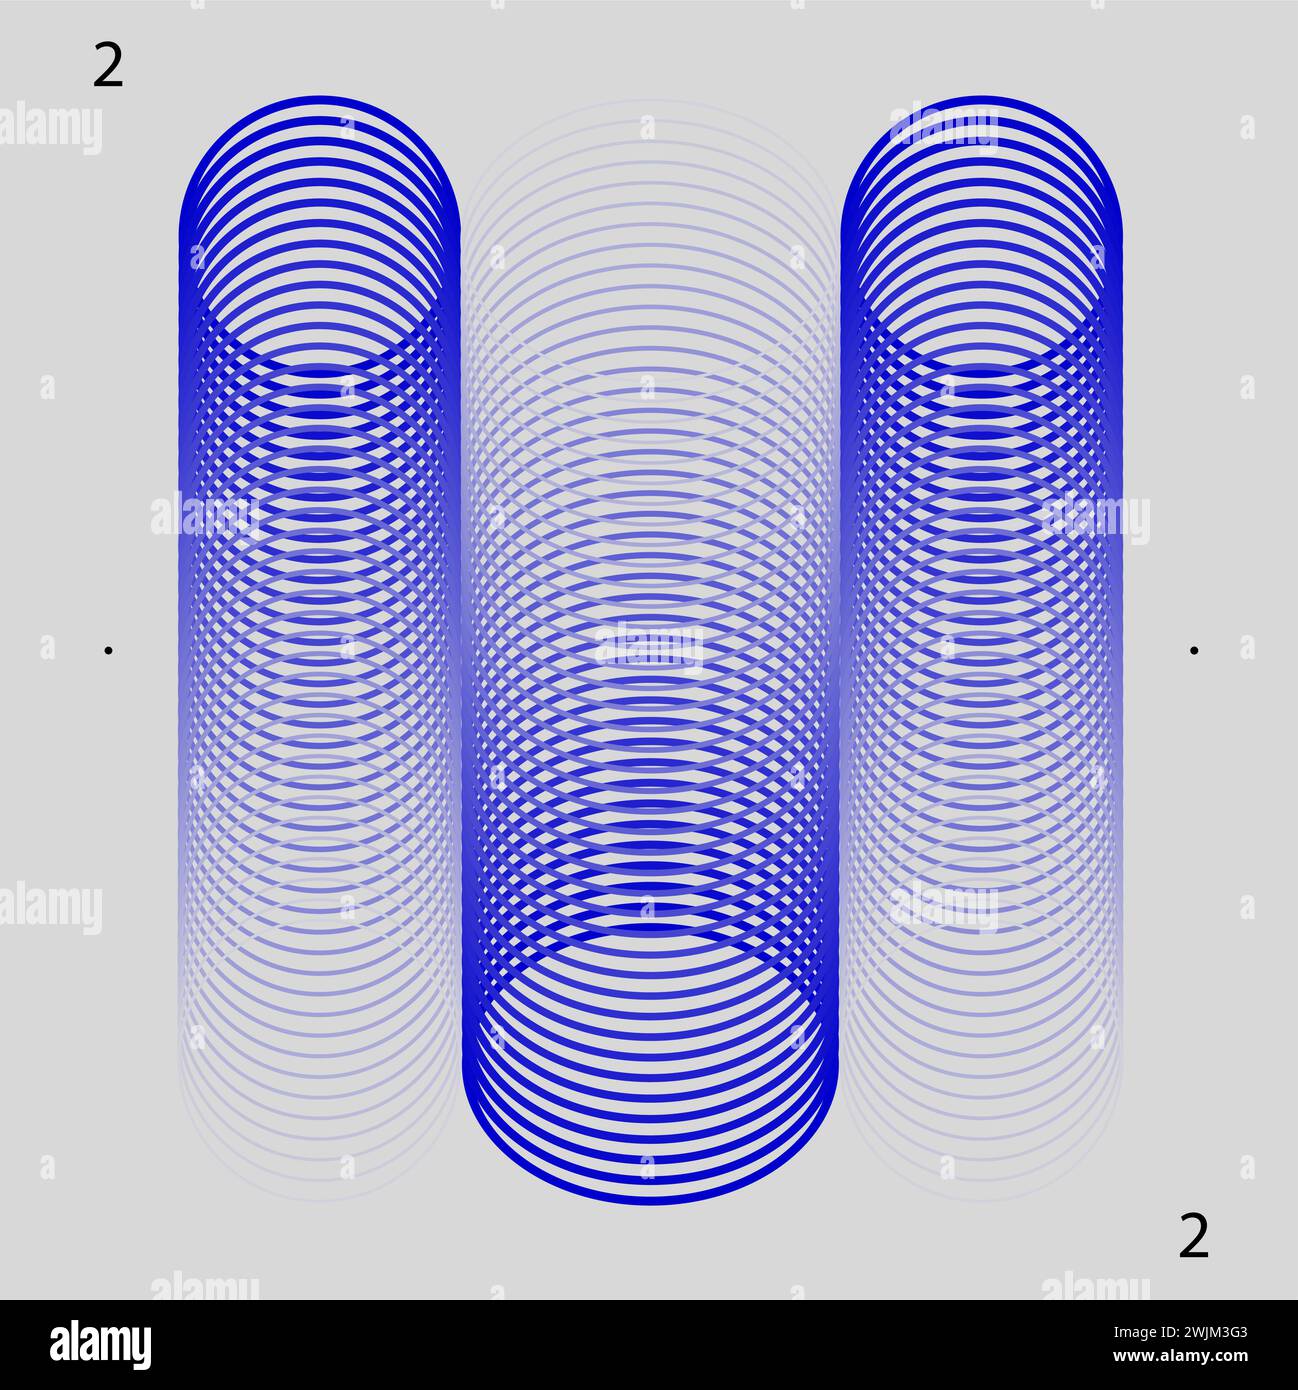 Trois illusions optiques cylindriques bleues avec des motifs circulaires concentriques sur un fond blanc. Esthétique moderne, art minimaliste Illustration de Vecteur